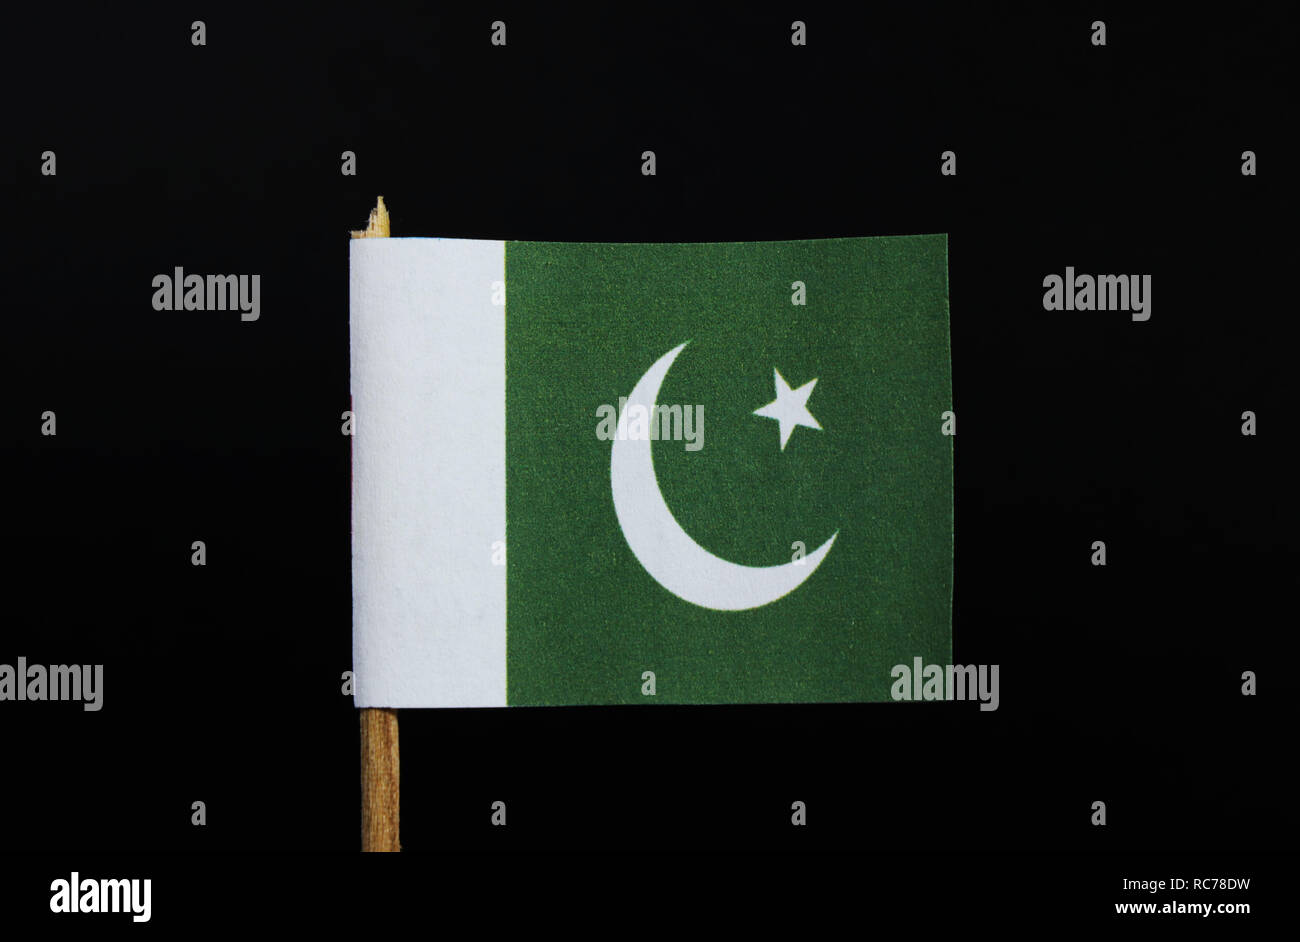 Die Nationalflagge Von Pakistan Auf Zahnstocher Auf Schwarzem Hintergrund Ein Weisser Stern Und Halbmond Auf Ein Dunkles Grun Mit Einem Vertikalen Weissen Streifen An Der H Stockfotografie Alamy